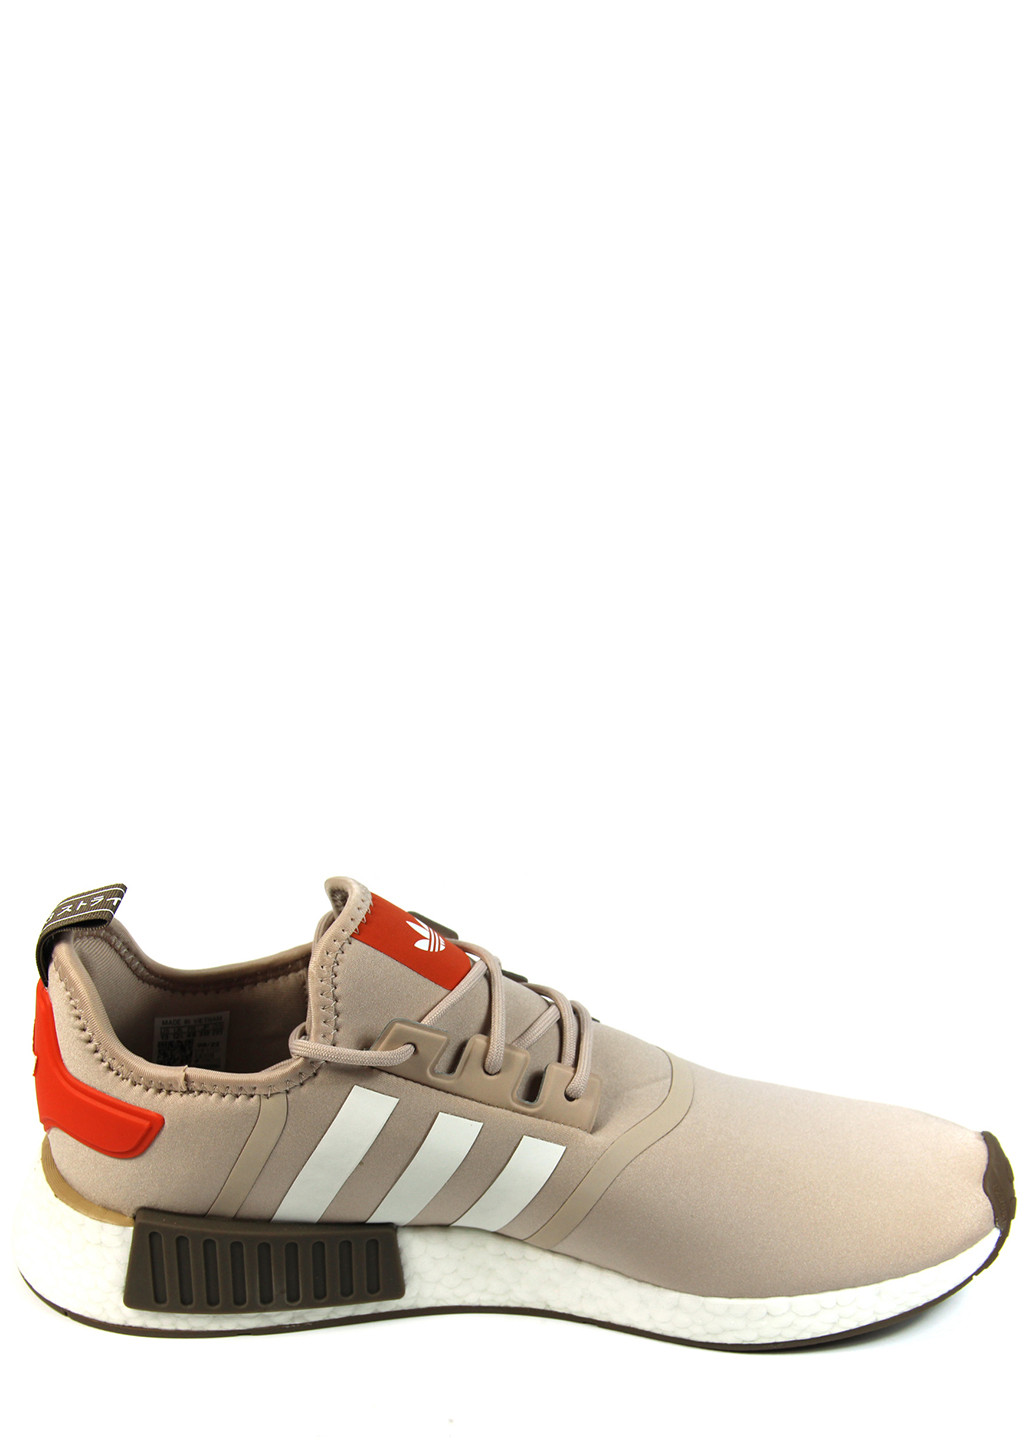 Цветные демисезонные мужские кроссовки nmd_r1 id4348 adidas